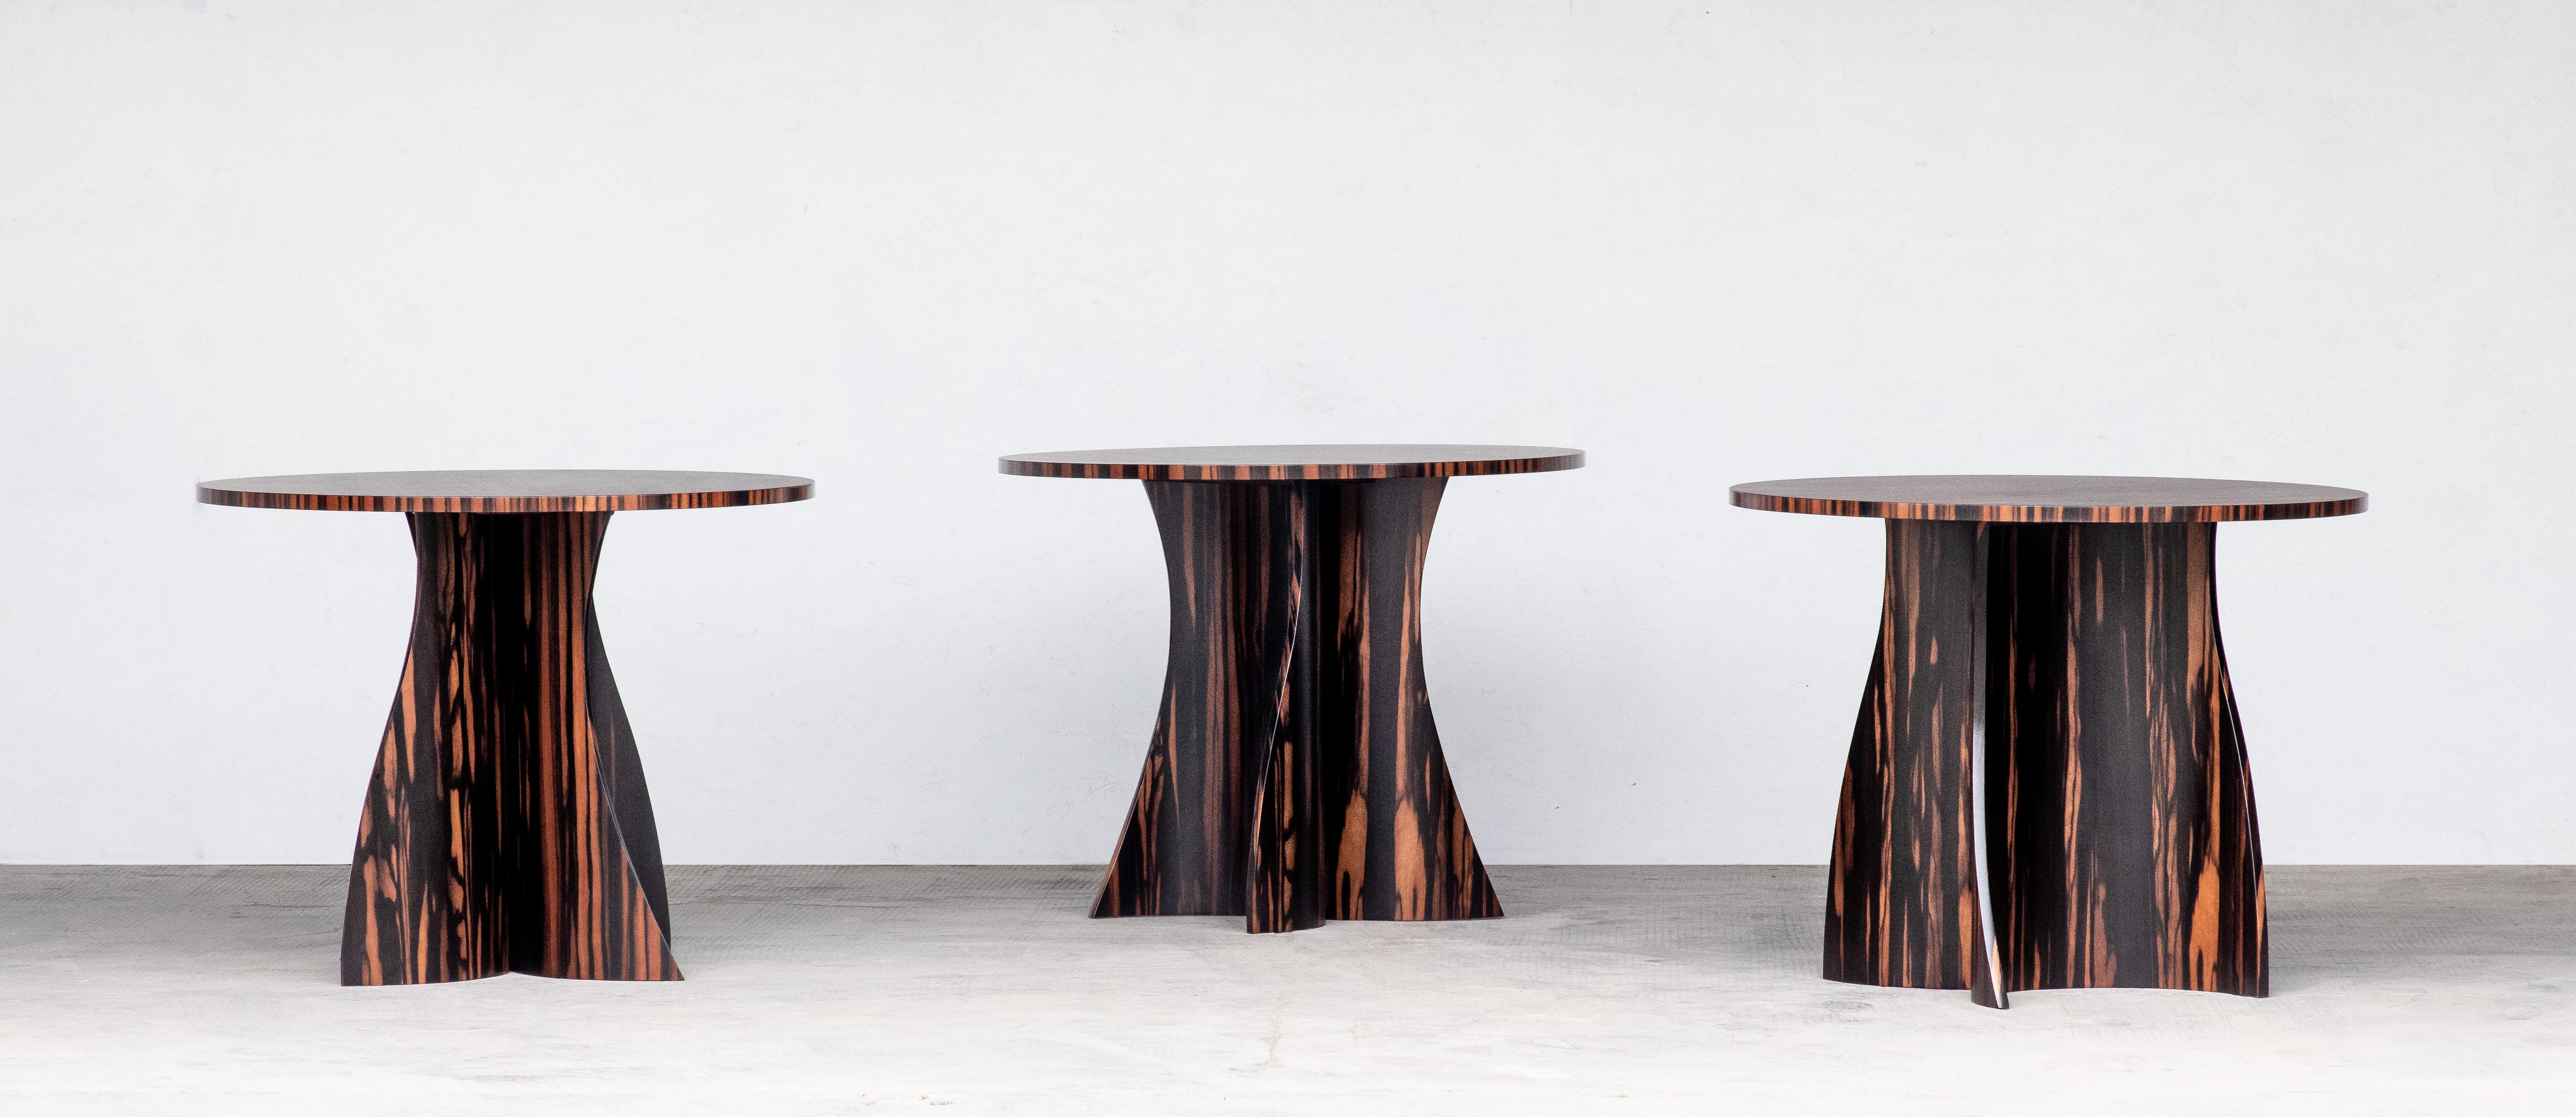 En stock et disponible pour une livraison immédiate

La table Andino présente une base en bois incurvée en deux parties dont la forme semble unique sous tous les angles. Montré ici en Ebène de Macassar, il est personnalisable dans n'importe quelle